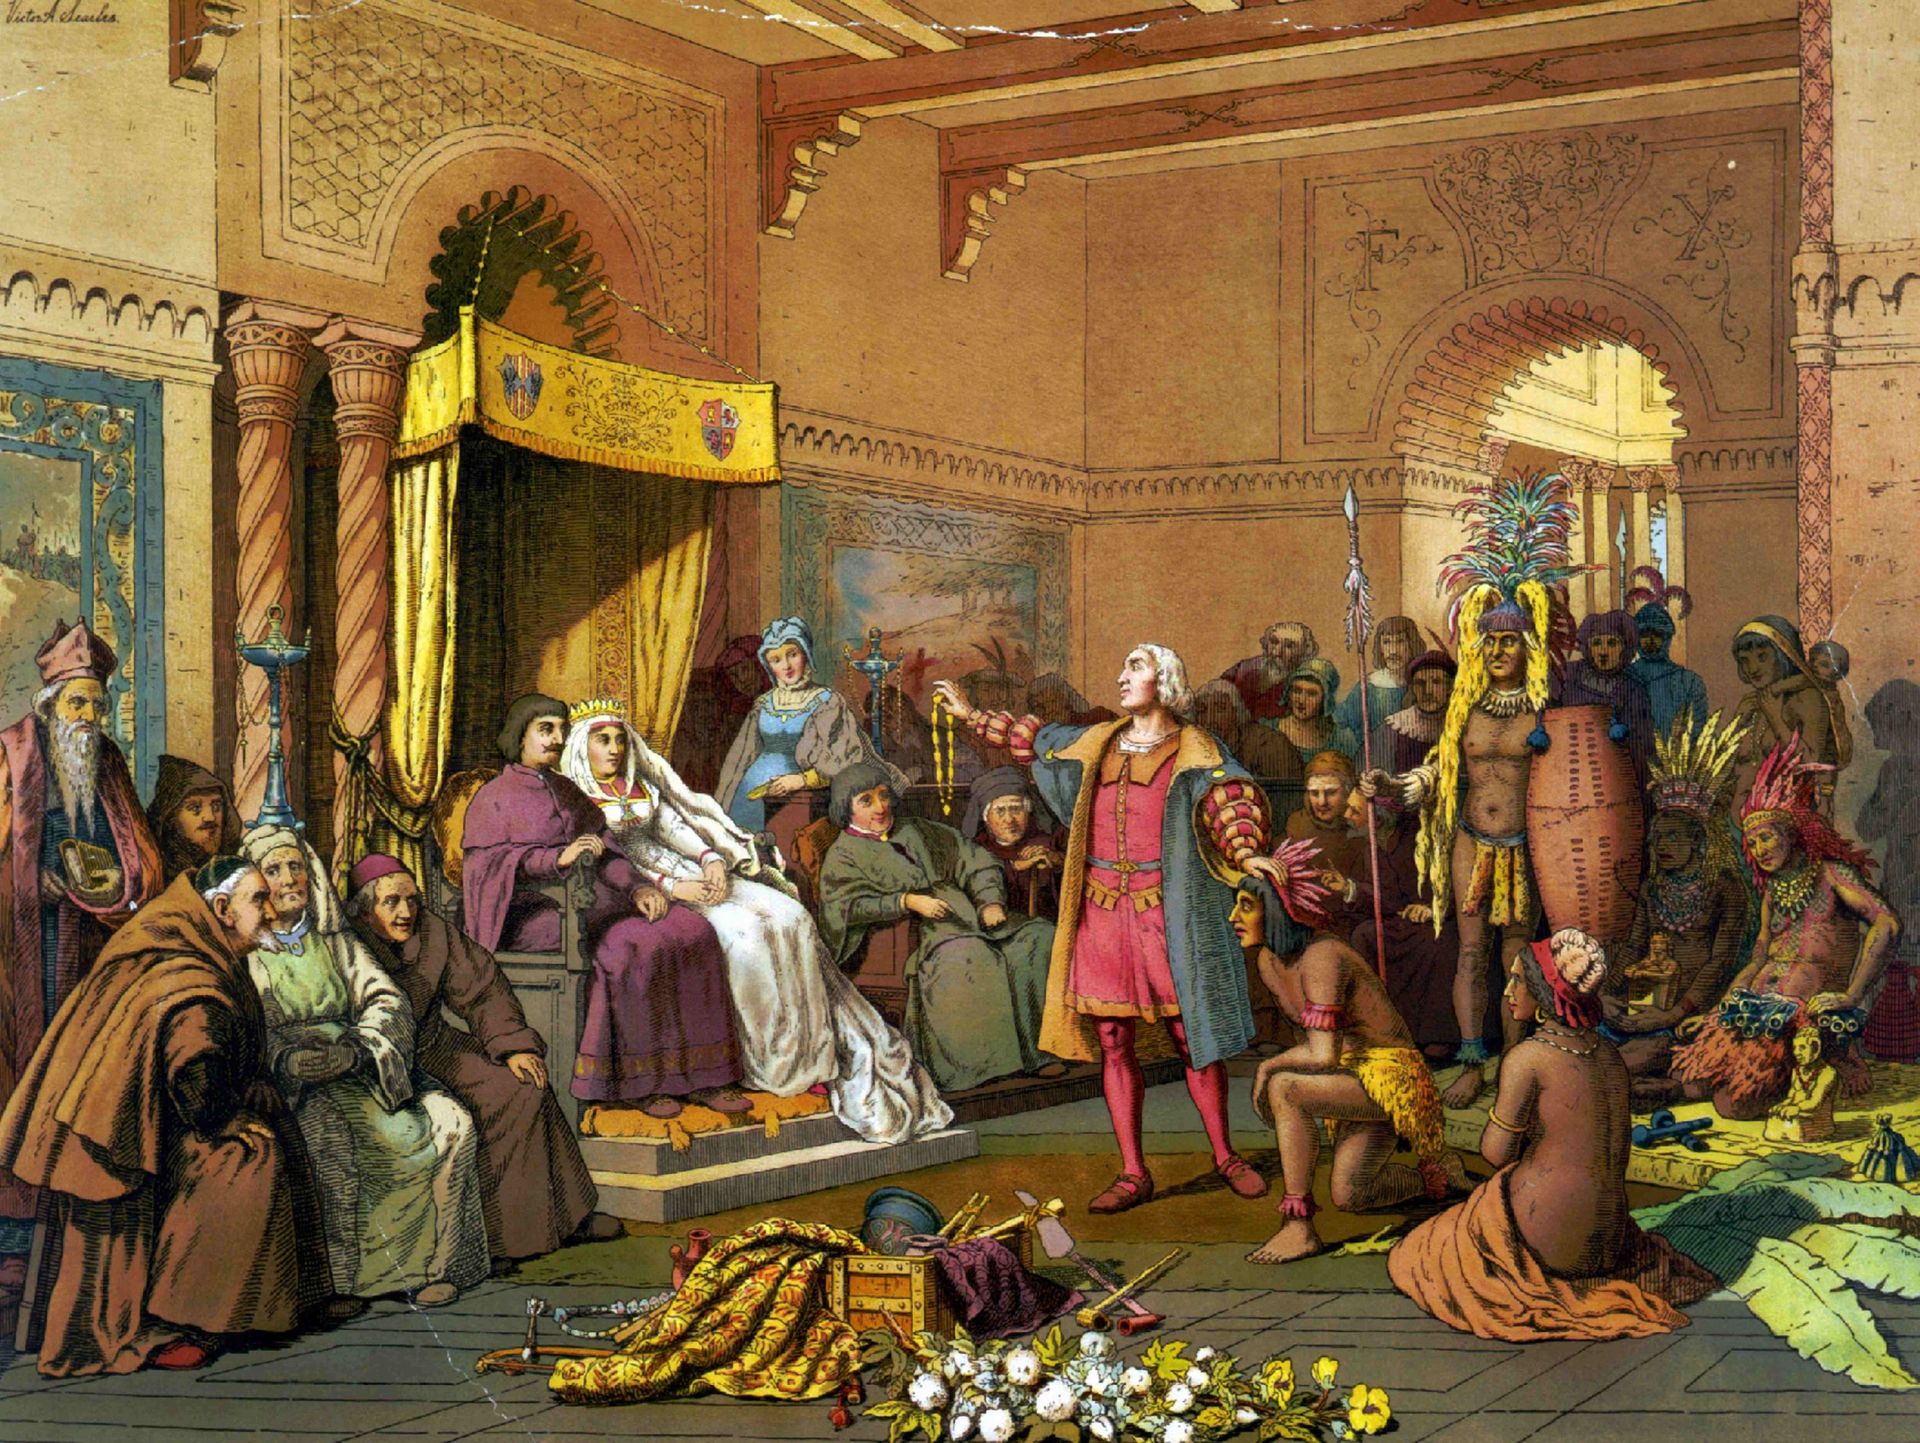 A Barcelone, Christophe Colomb dévoile les richesses du Nouveau monde à Ferdinand et Isabelle. 